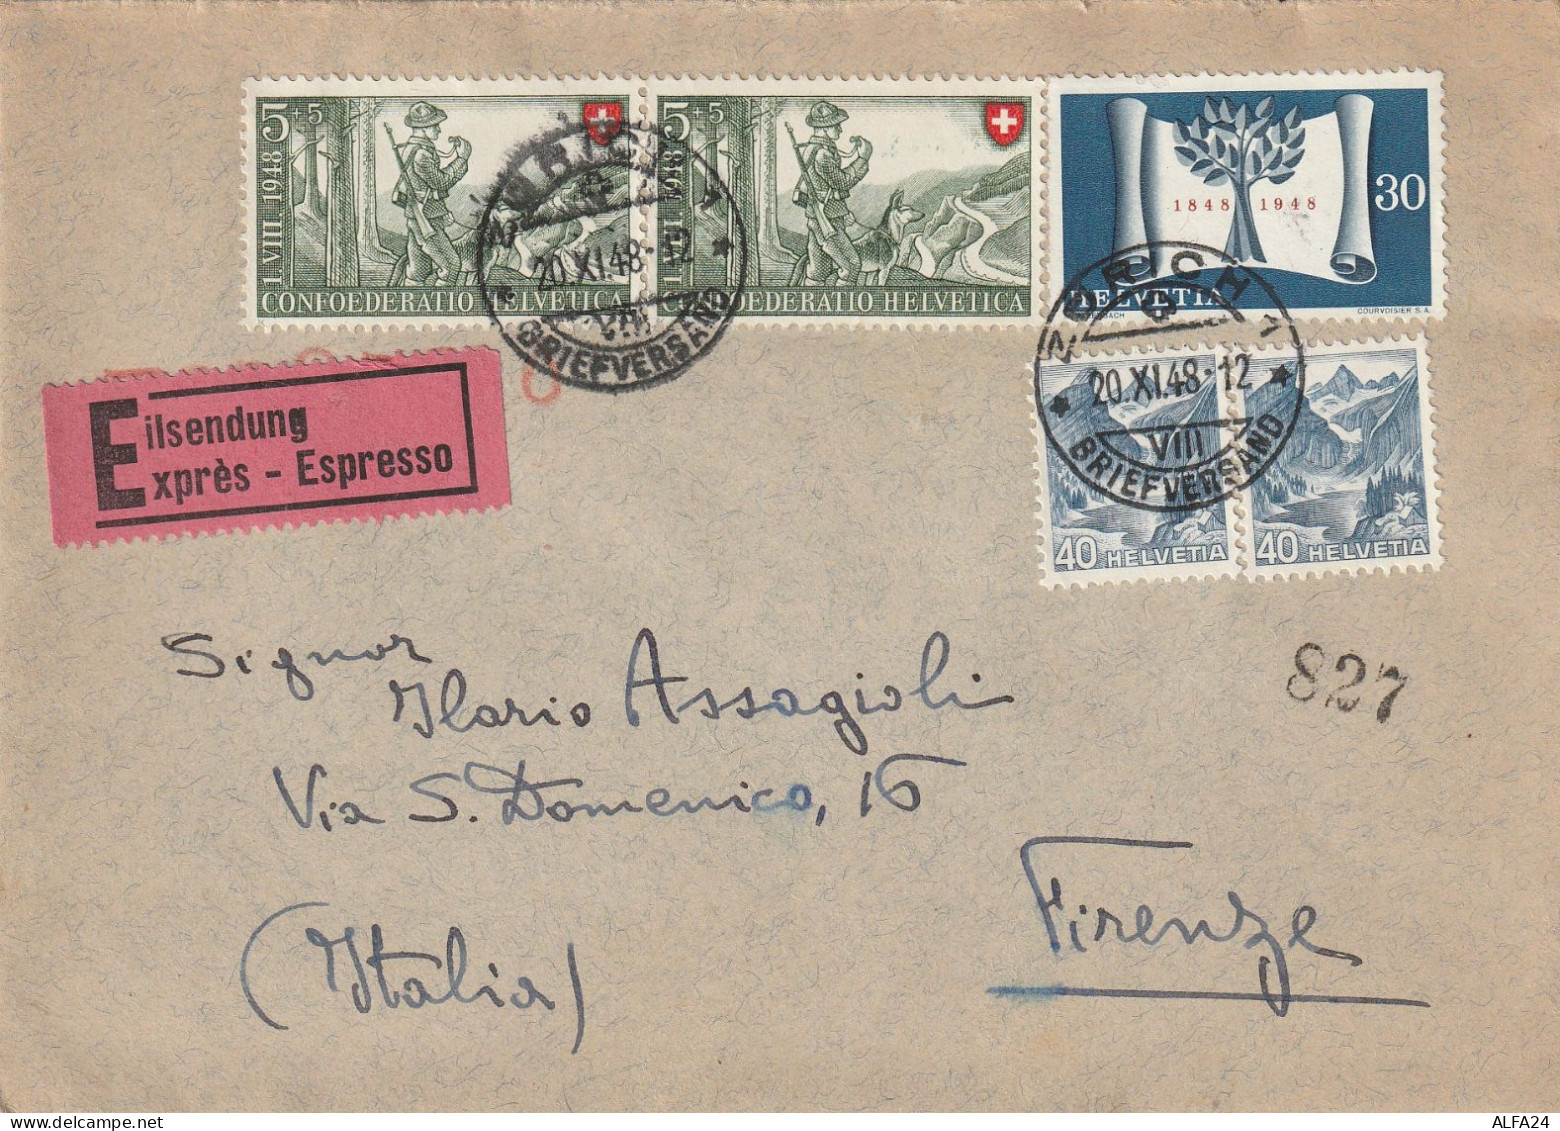 ESPRESSO SVIZZERA 1948 30+2X5+2X40 TIMBRO ZURICH (YK32 - Covers & Documents